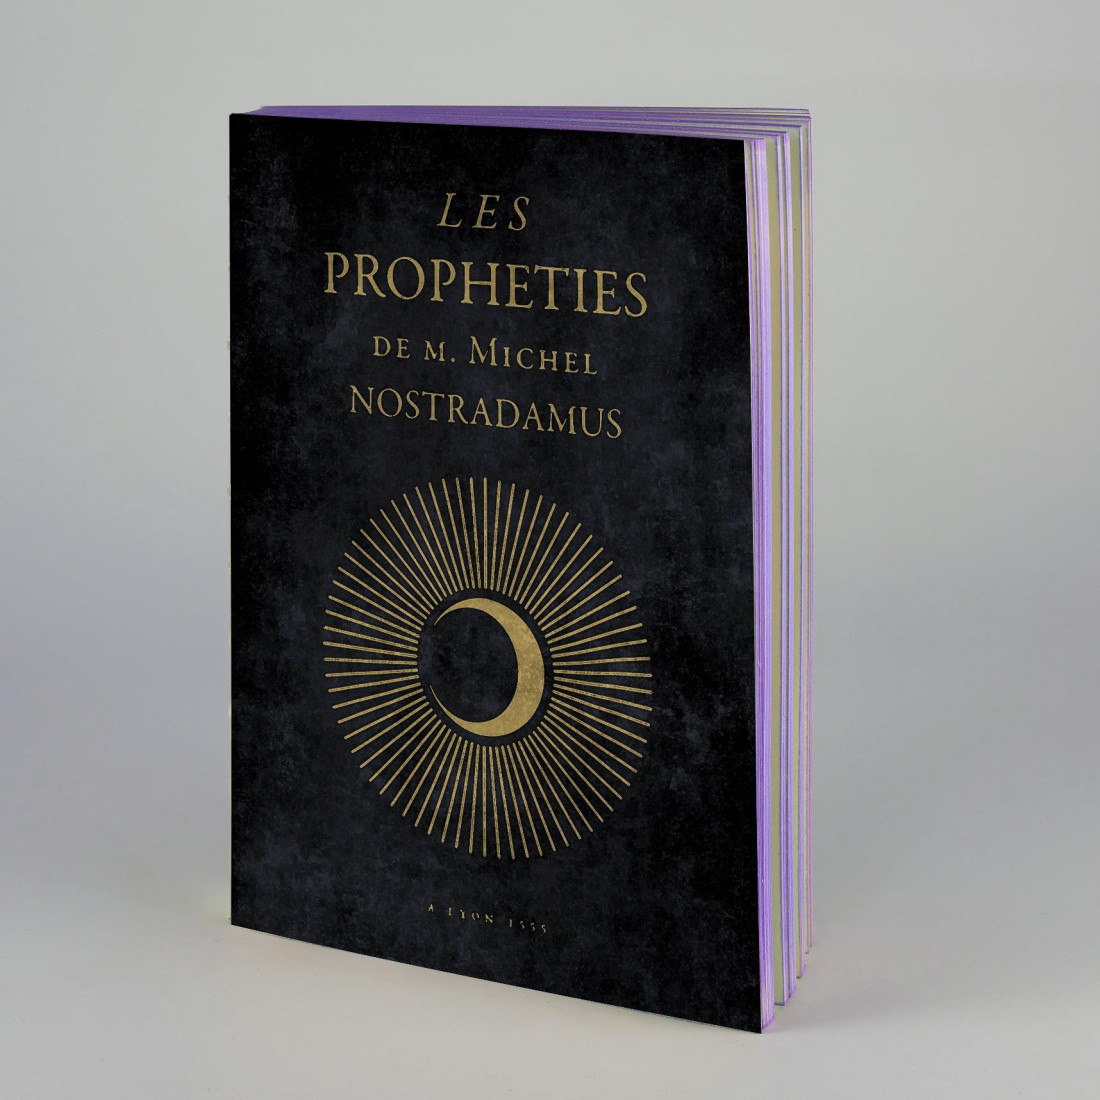 ANTIQUE NOTEBOOK Les prophéties de Nostradamus LIBRI MUTI